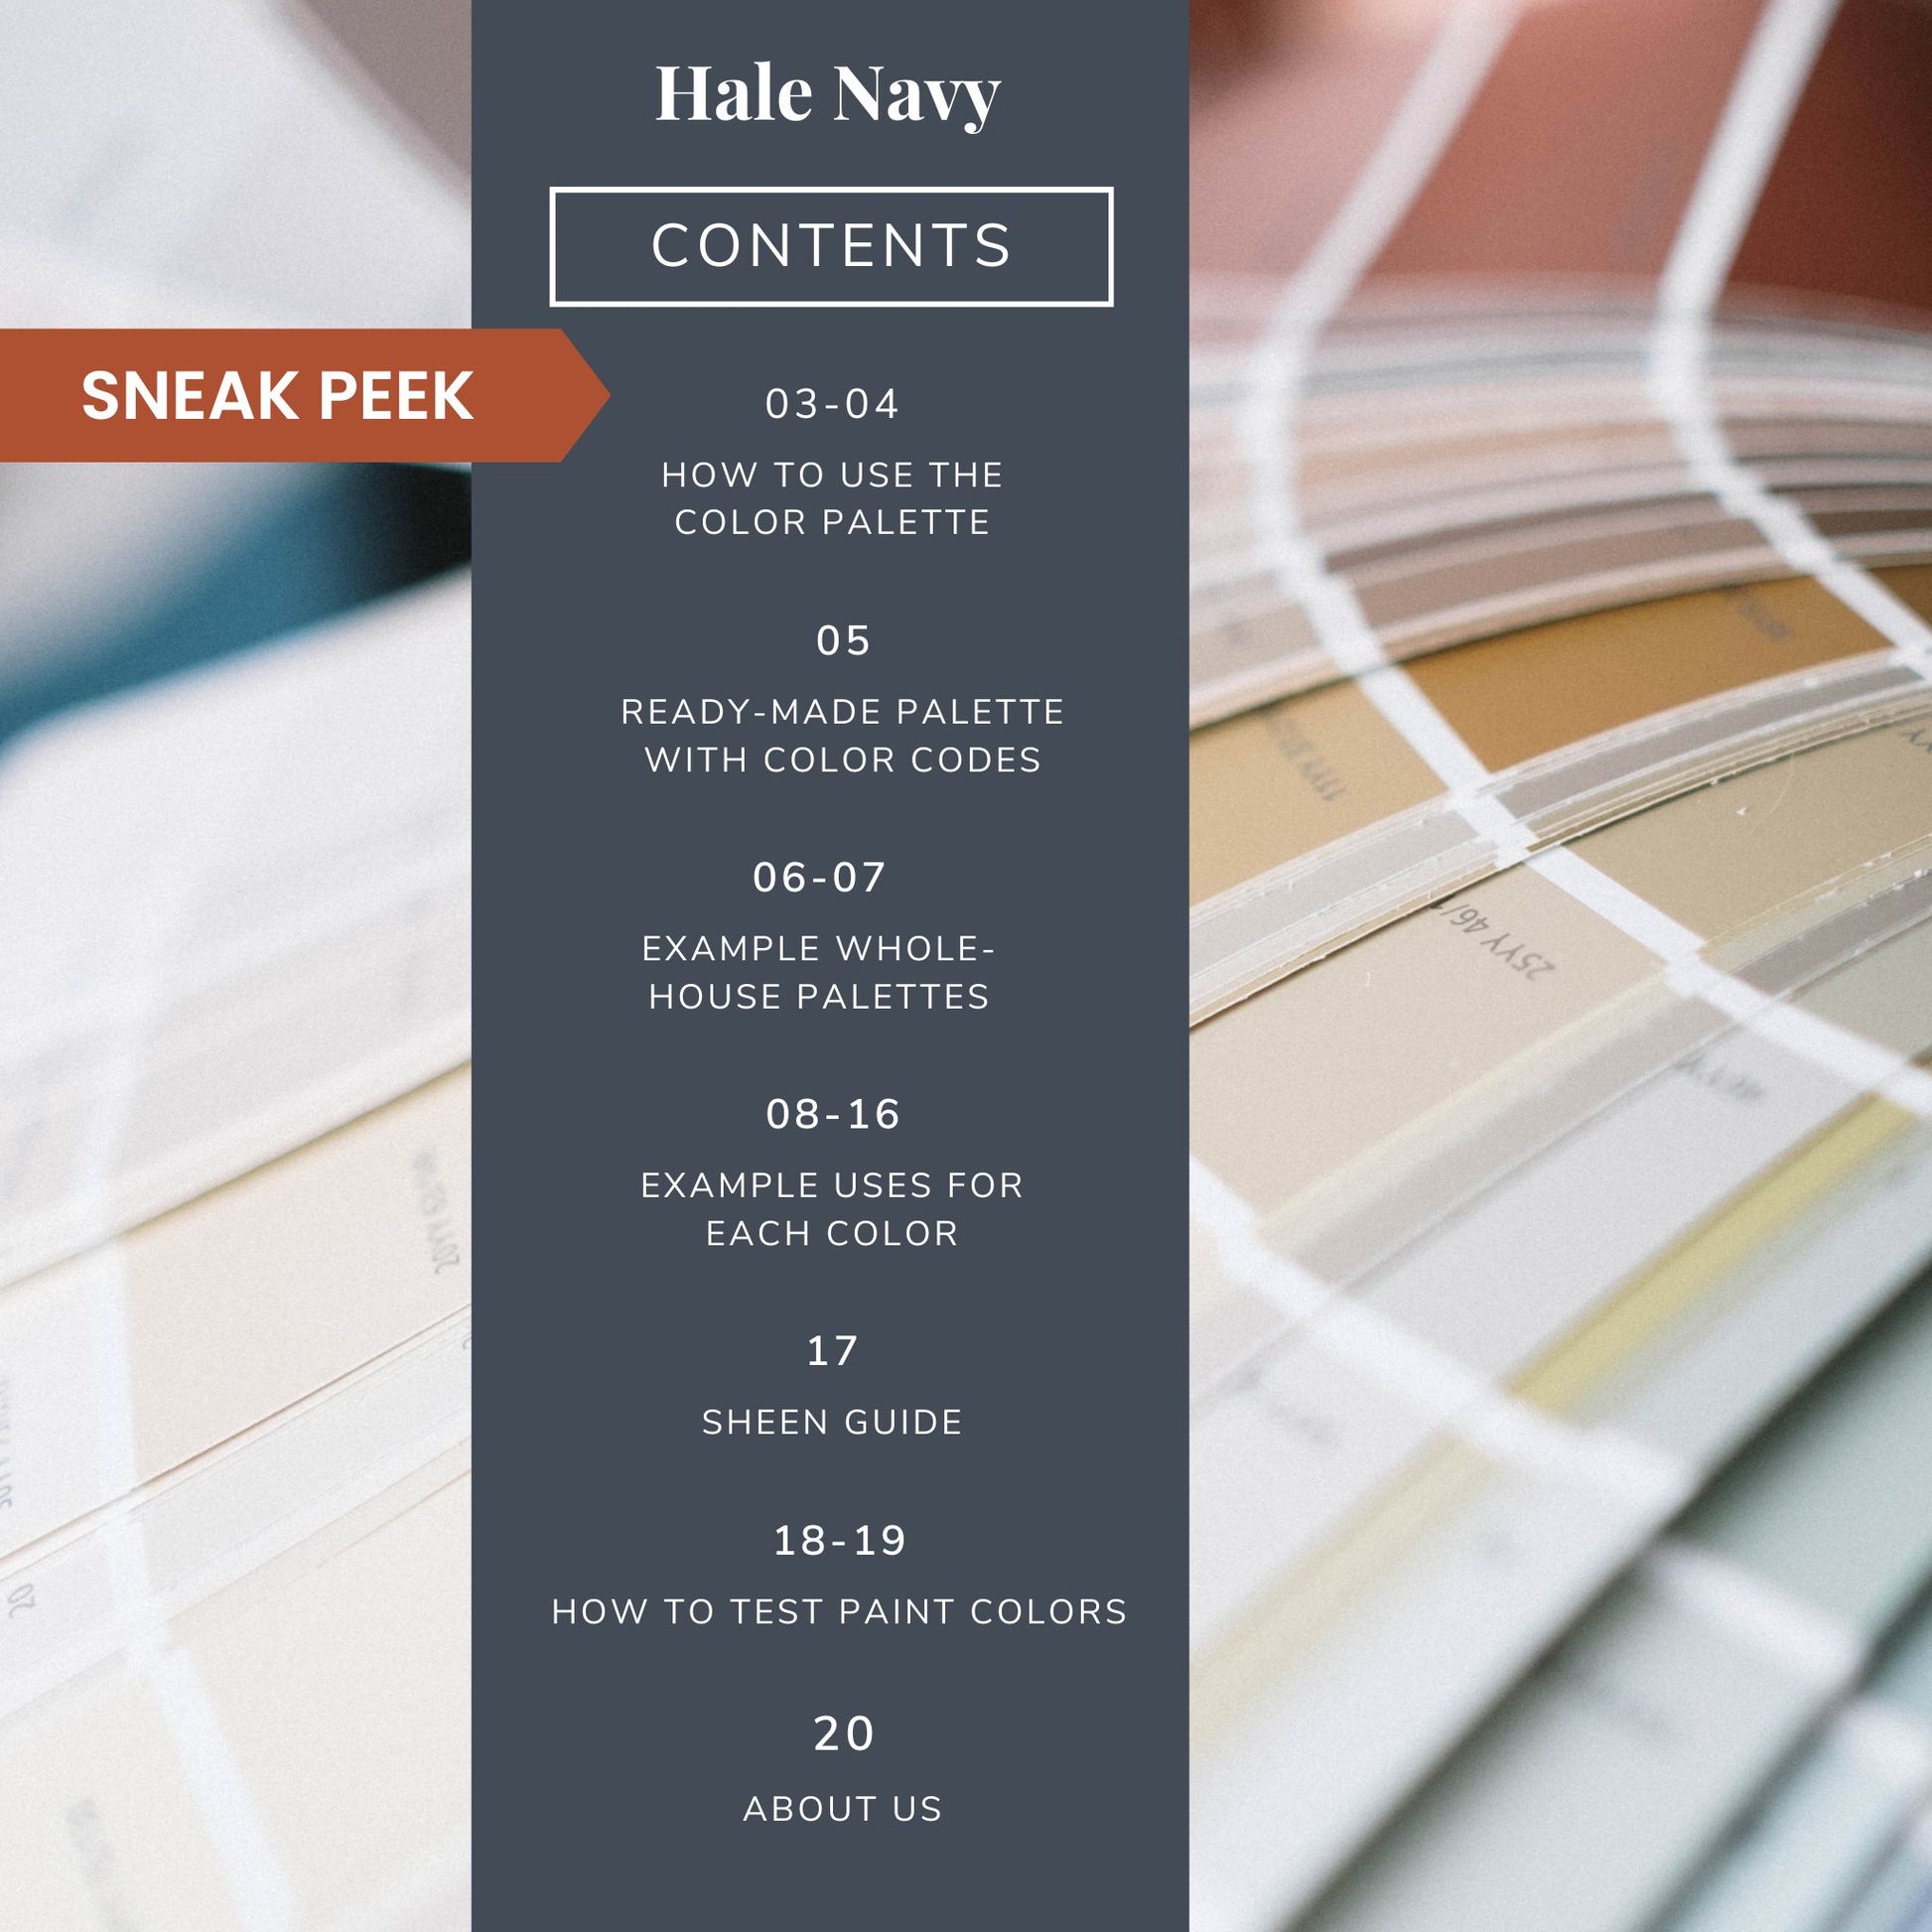 Contents list for a Benajmin Moore Hale Navy color palette guide